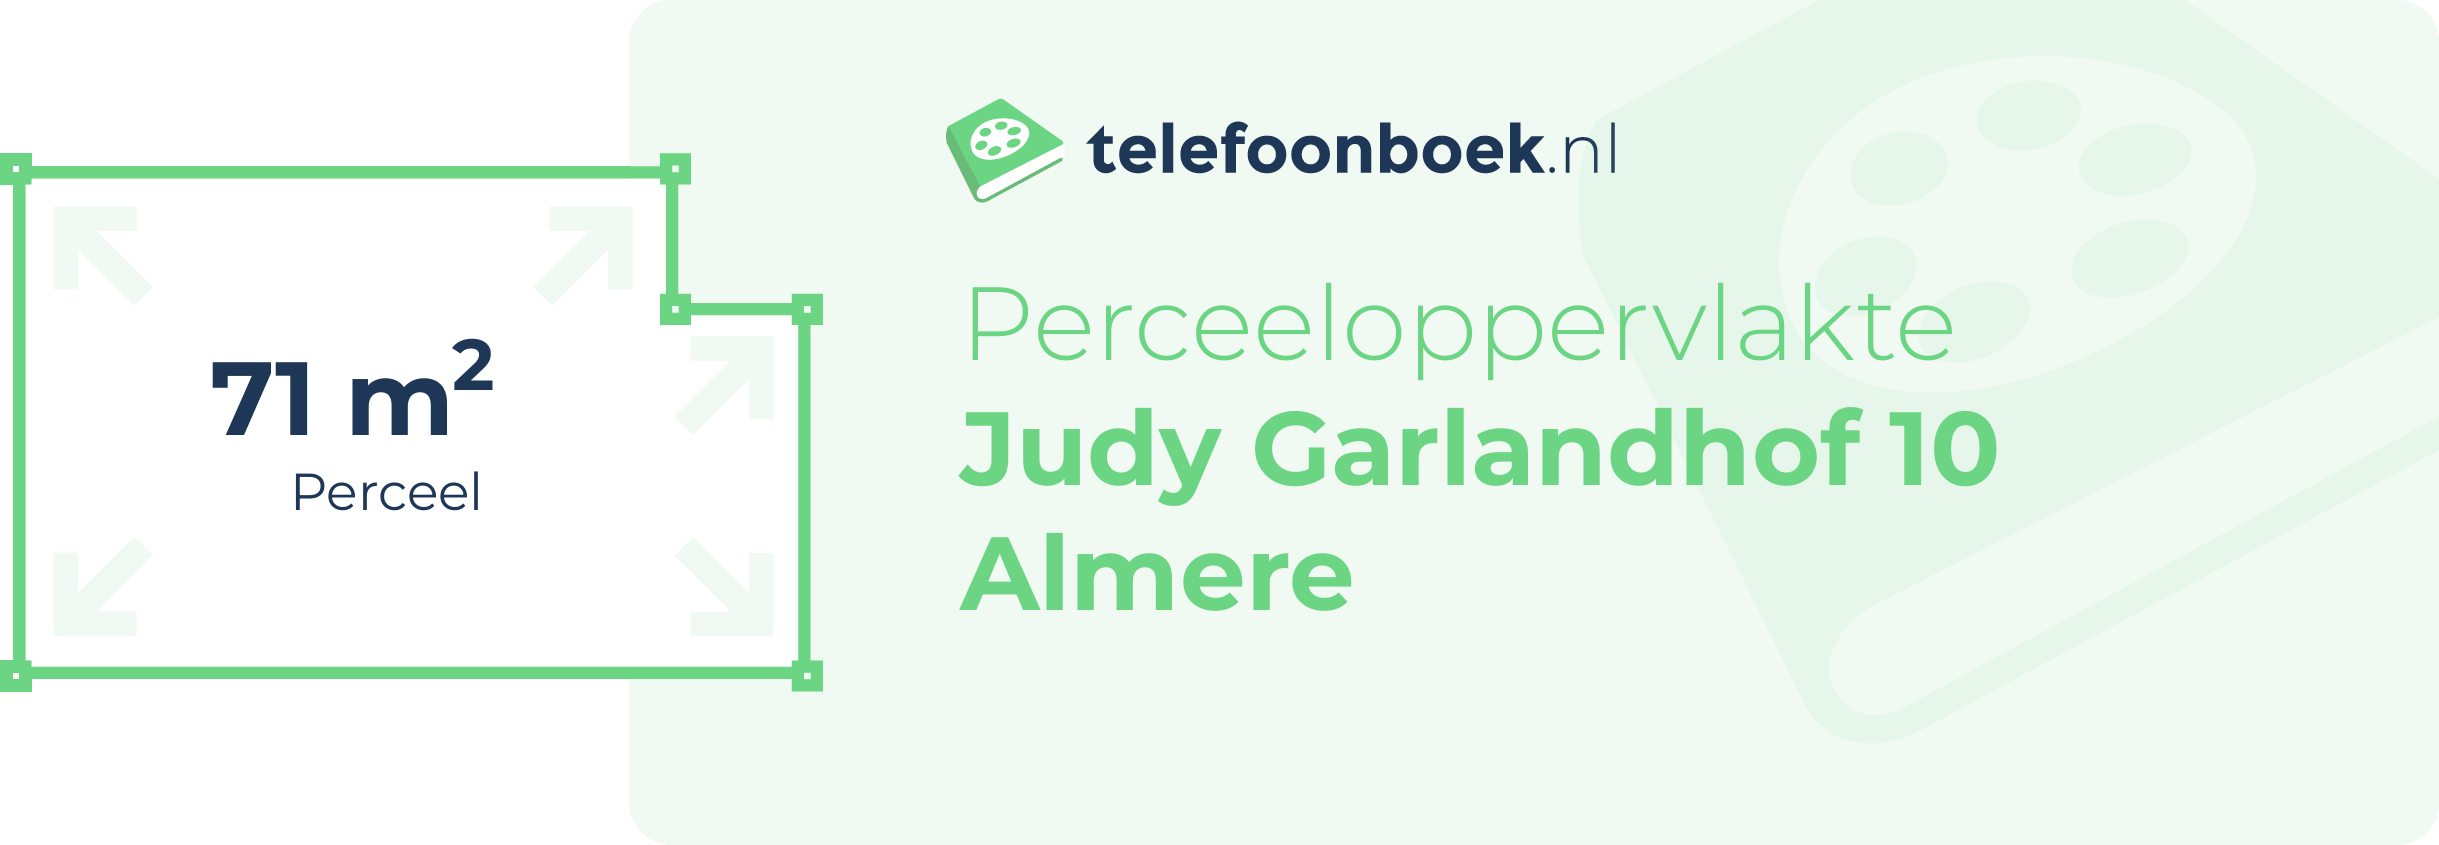 Perceeloppervlakte Judy Garlandhof 10 Almere